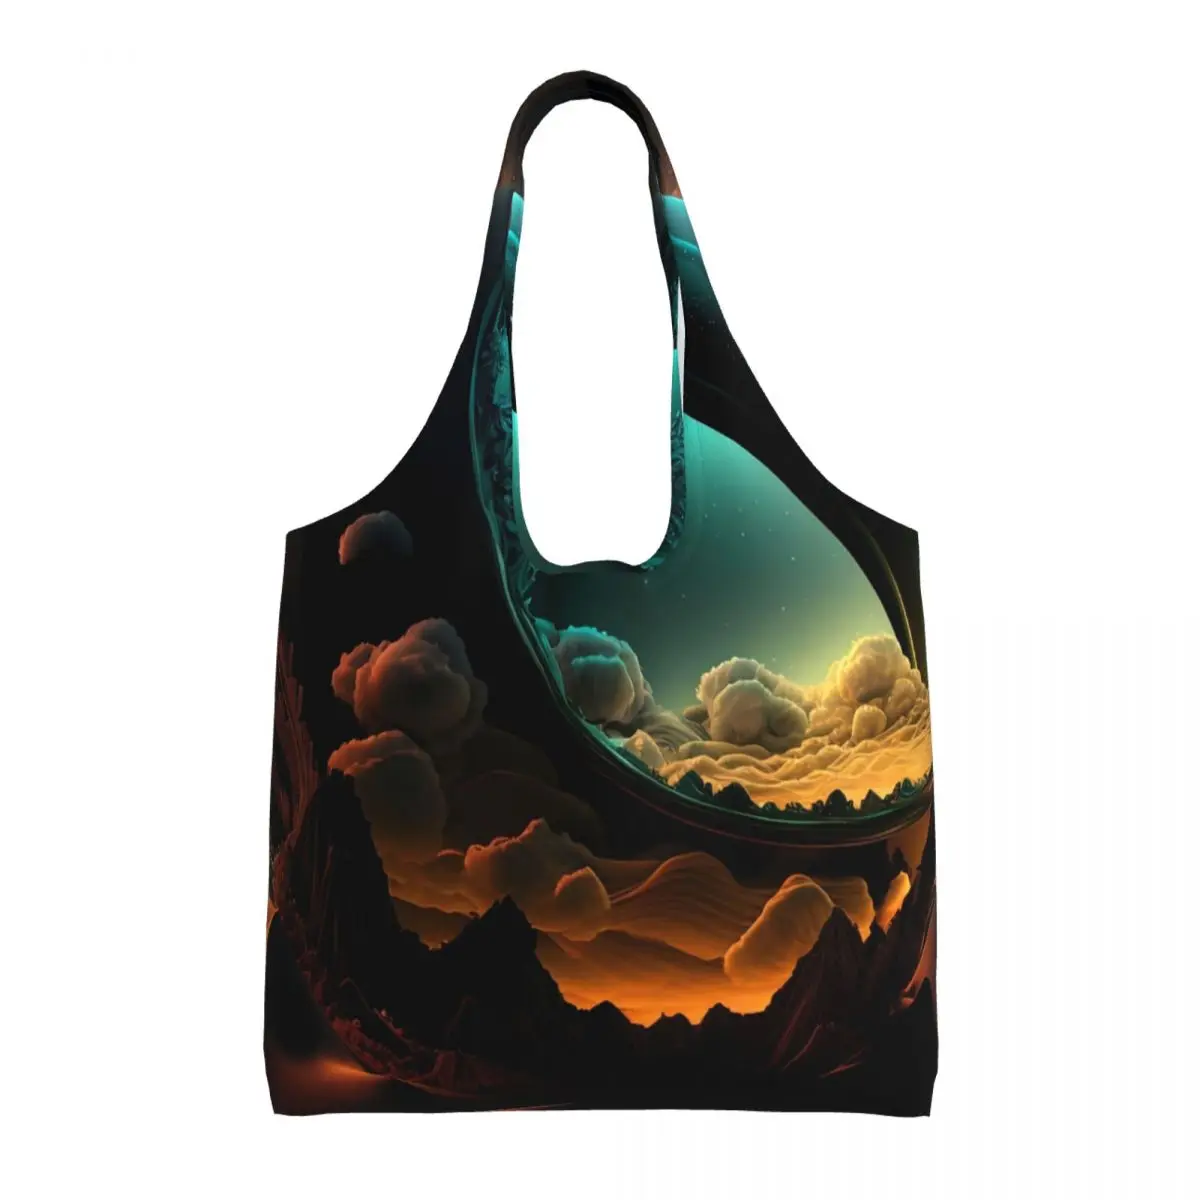 

Desert Glow Shopper Bag Cactus Print Handbags Female Print Tote Bag Leisure Cloth Beach Beach Bag